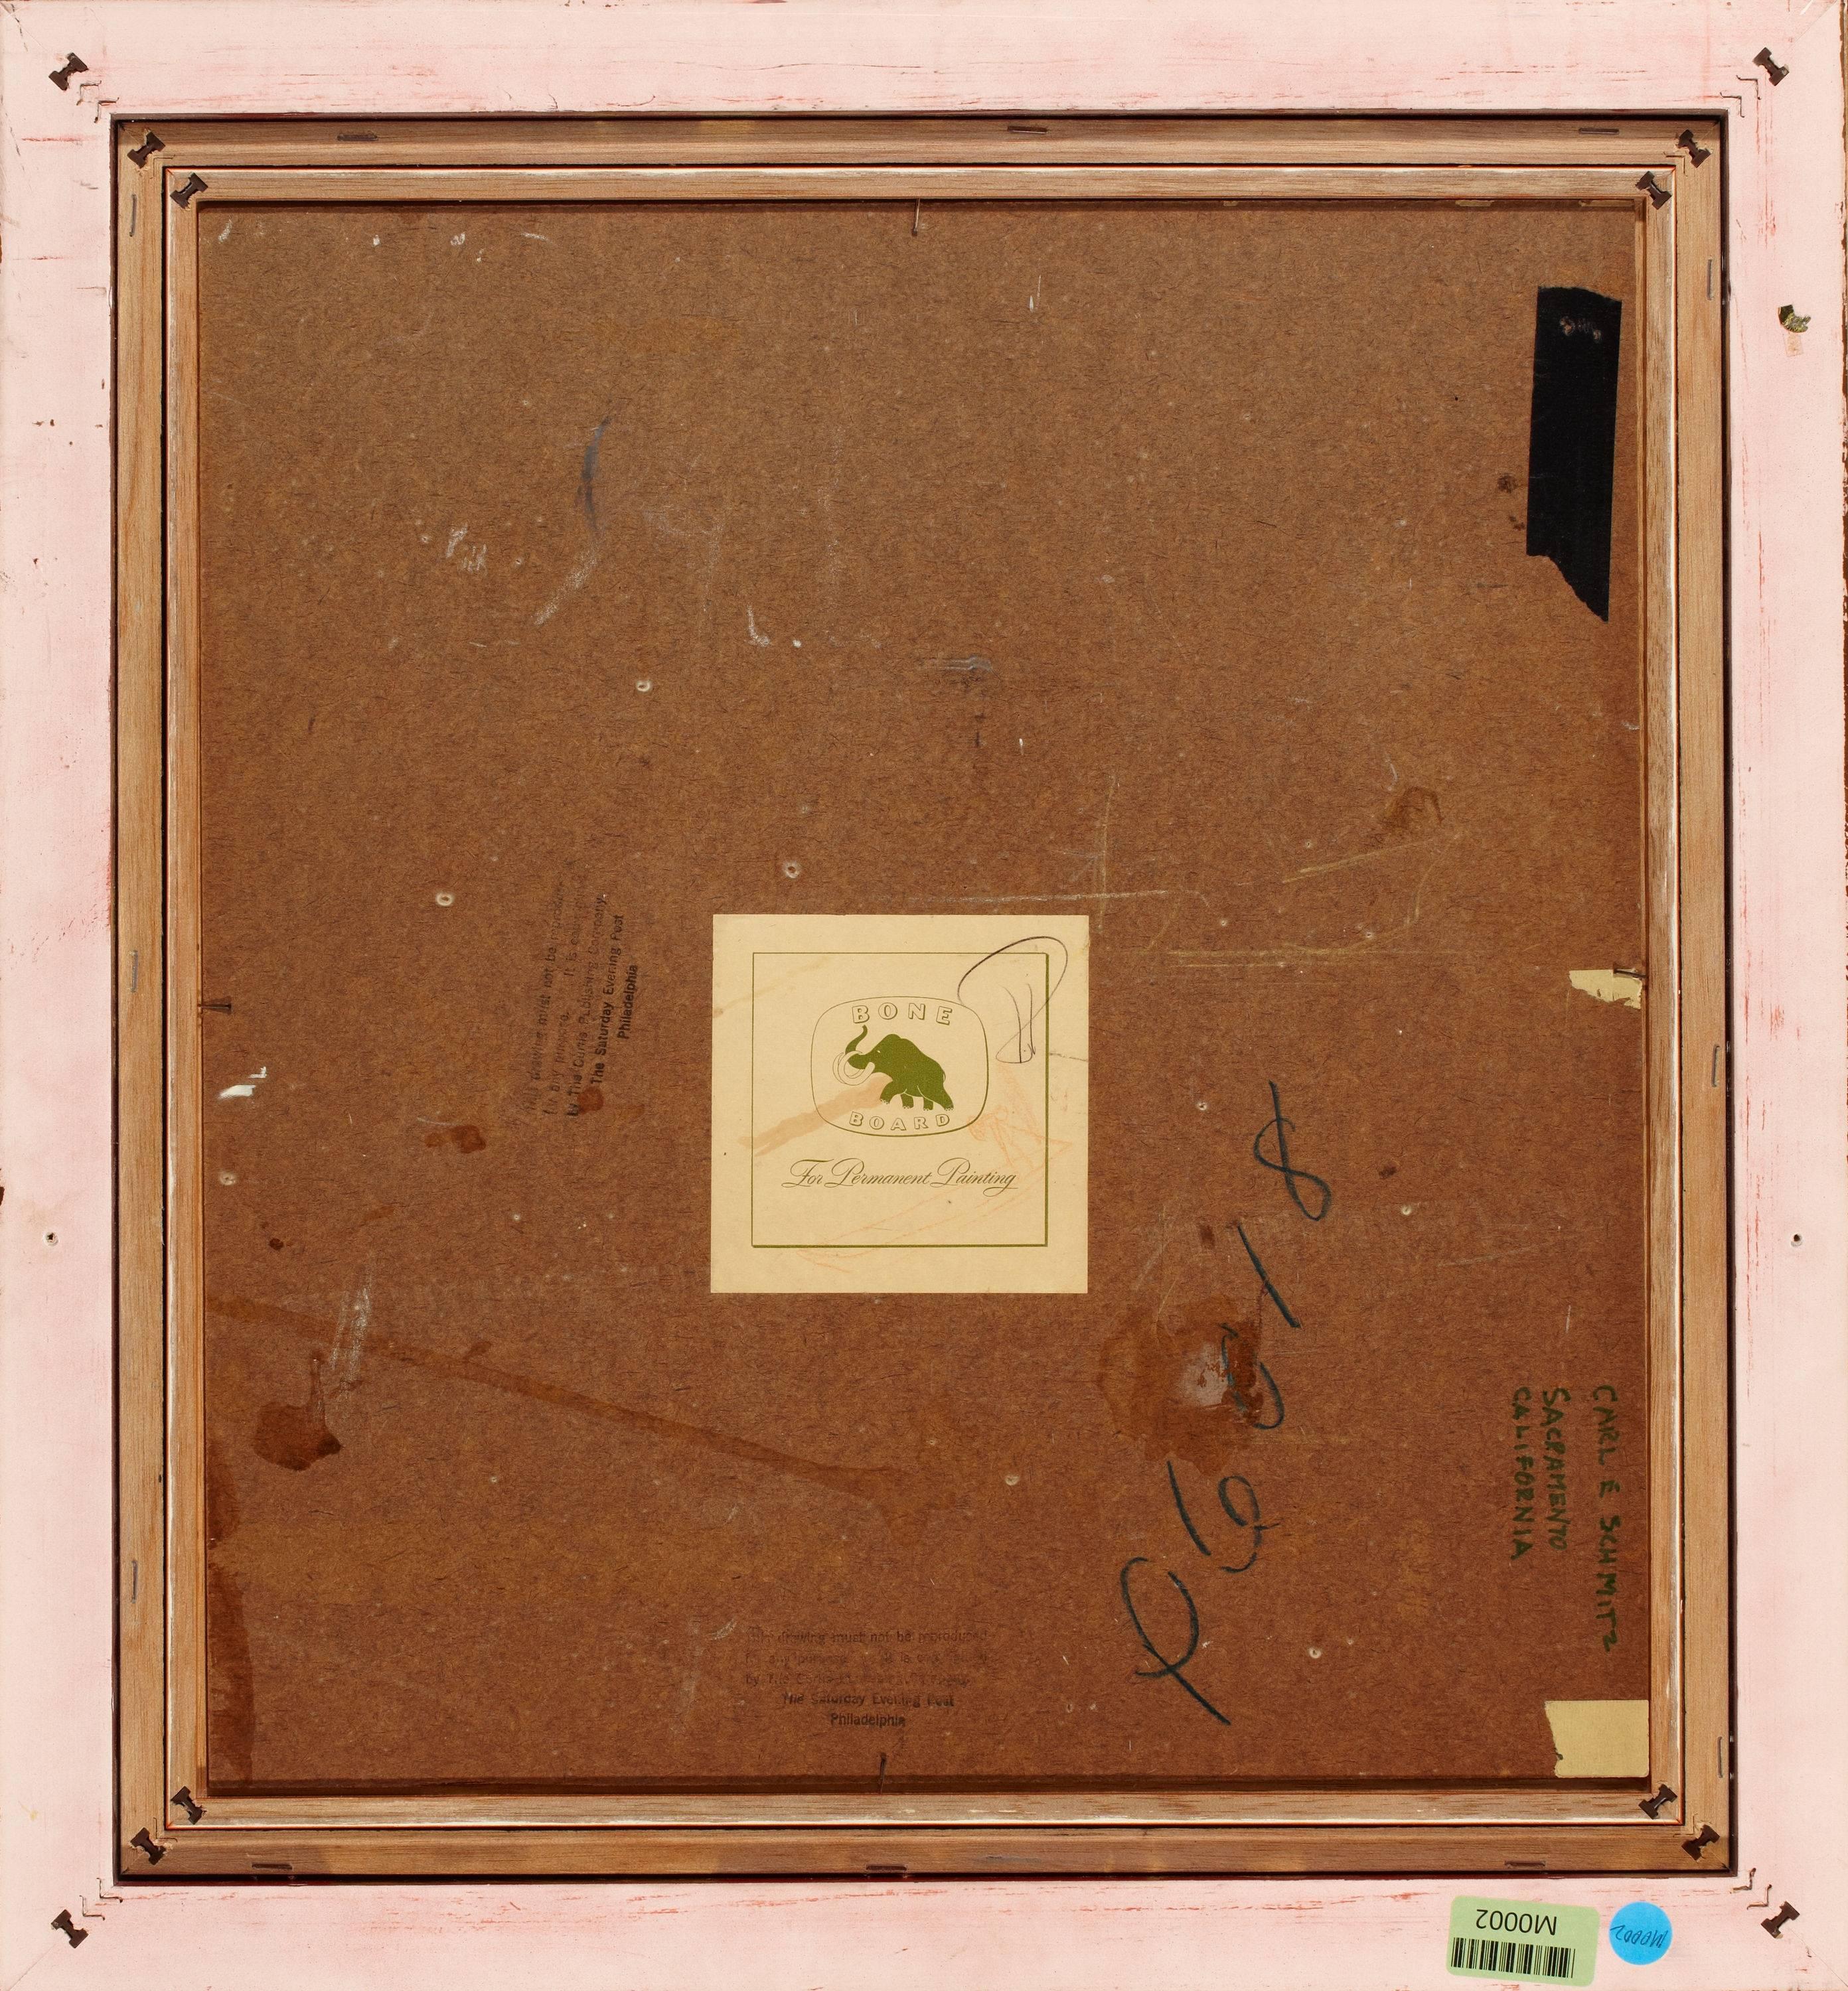 Médium : Huile sur carton
Signature : Signé en bas à gauche
Taille à vue 18.50